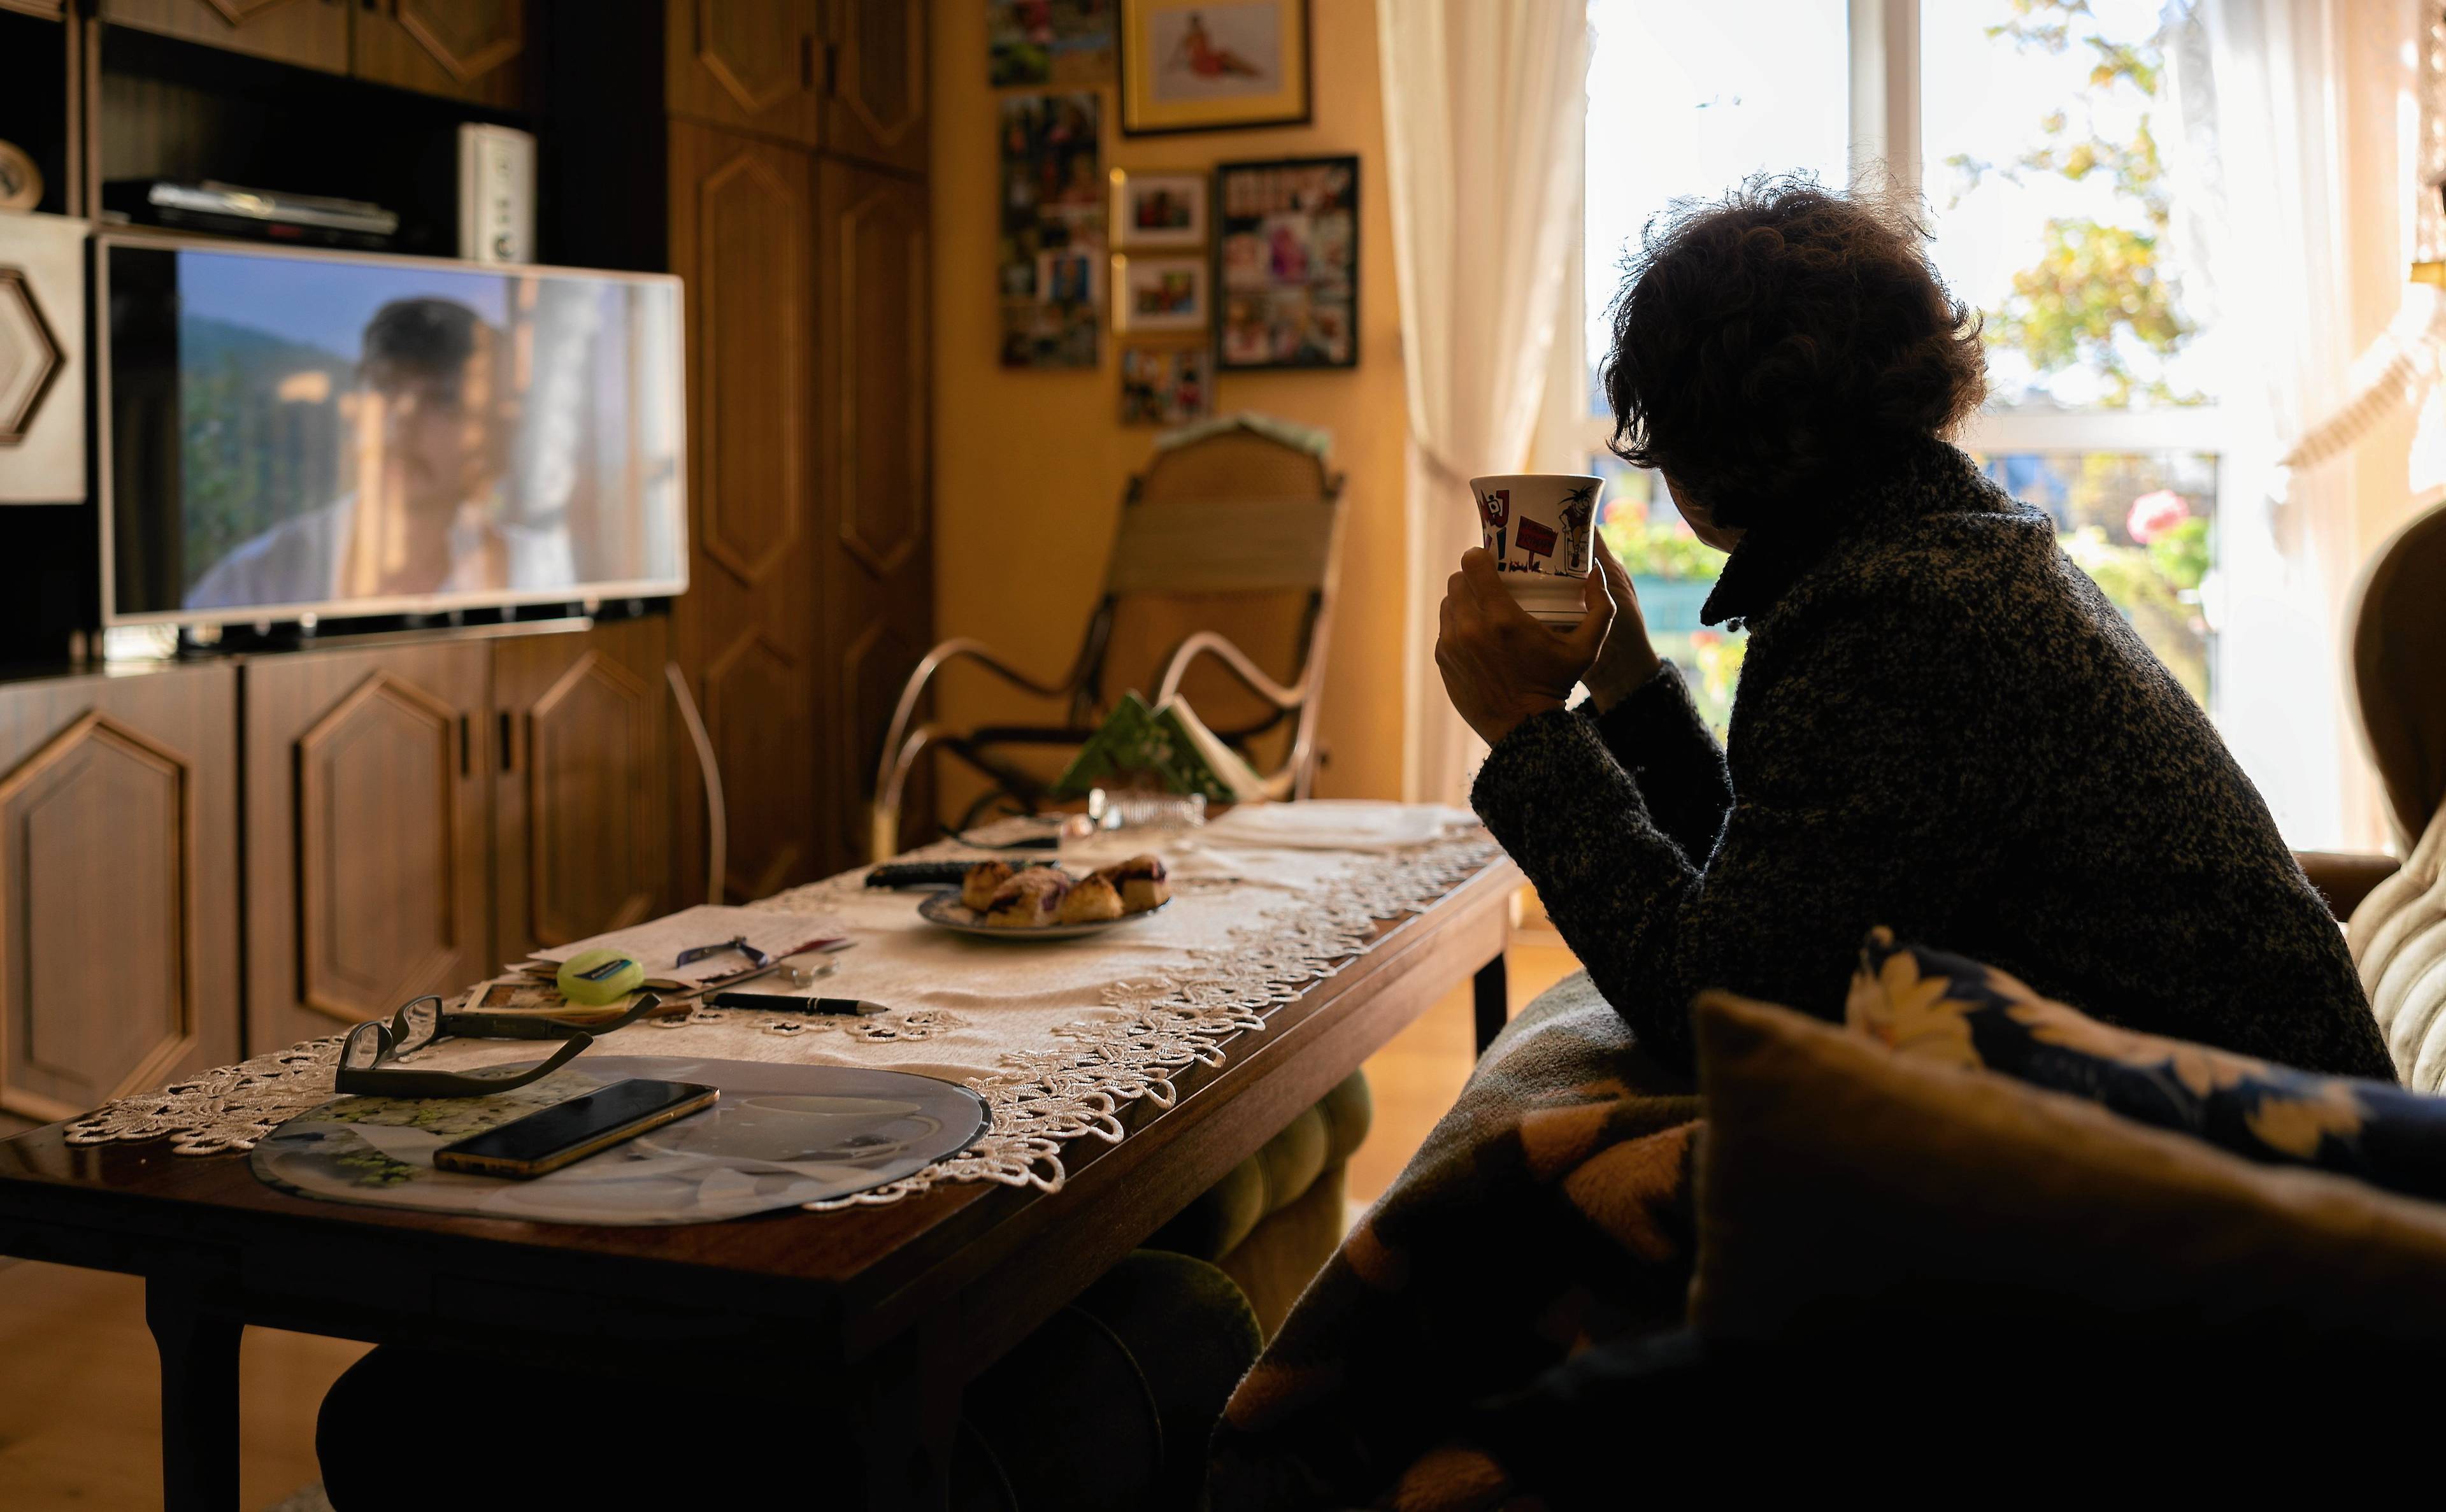 Kobieta siedzi na kanapie w mieszkaniu, jest przykryta kocem w dłoniach trzyma kubek z herbatą